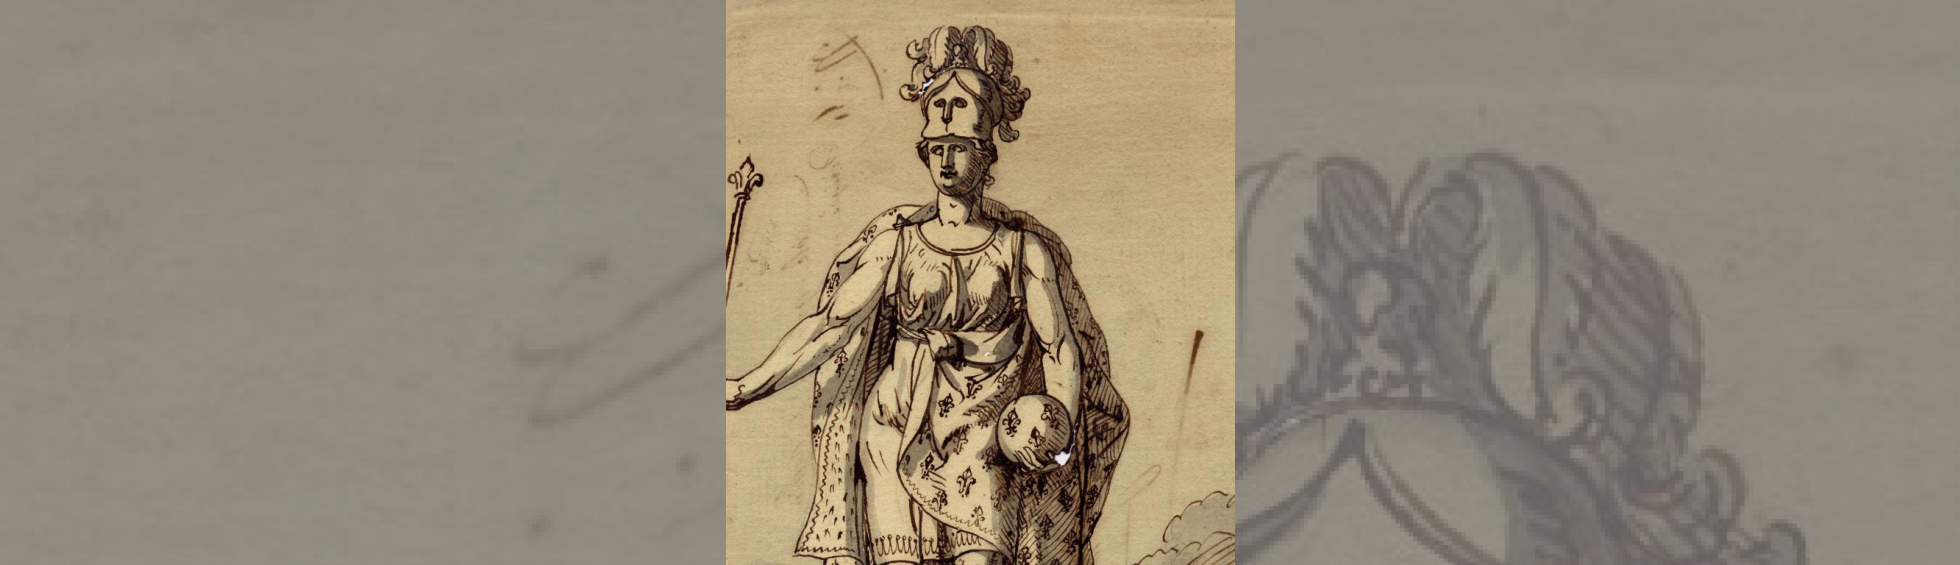 La déesse Minerve casquée revêtue d'une cape à fleurs de lis et tenant en main gauche un globe ;un sceptre en main droite